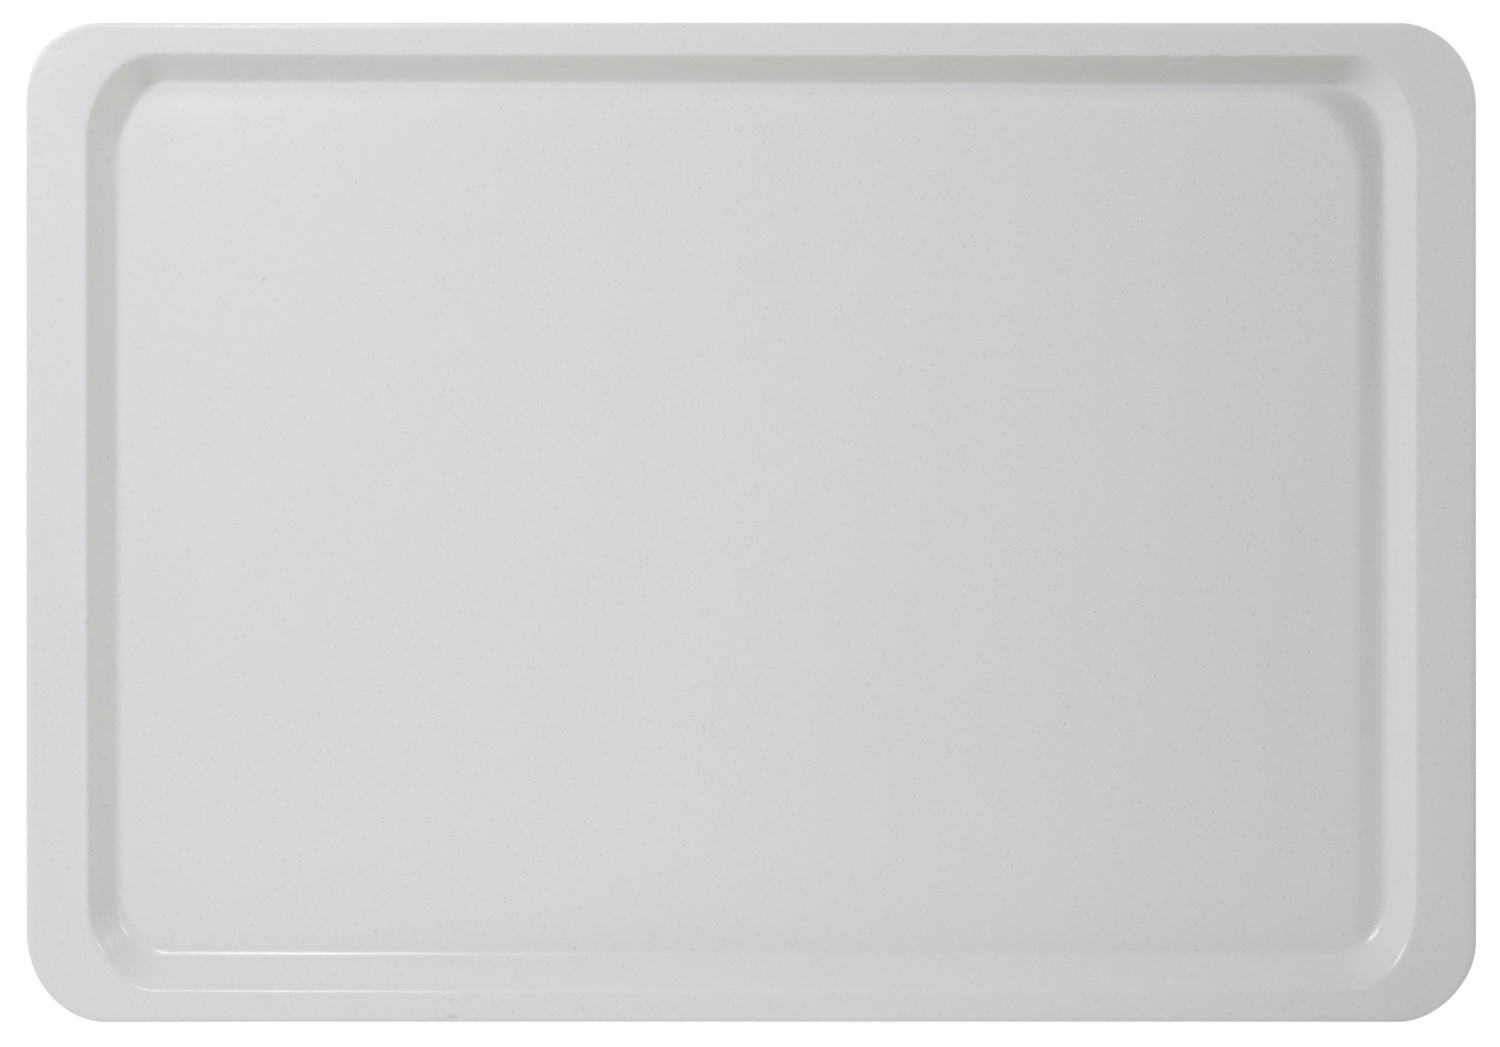 Tablett EASY GastroNorm GN 1/1, Farbe: lichtgrau, aus glasfaserverstärktem Polyesterharz, Länge: 53 cm, Breite: 32,5 cm, Höhe: 1,6 cm